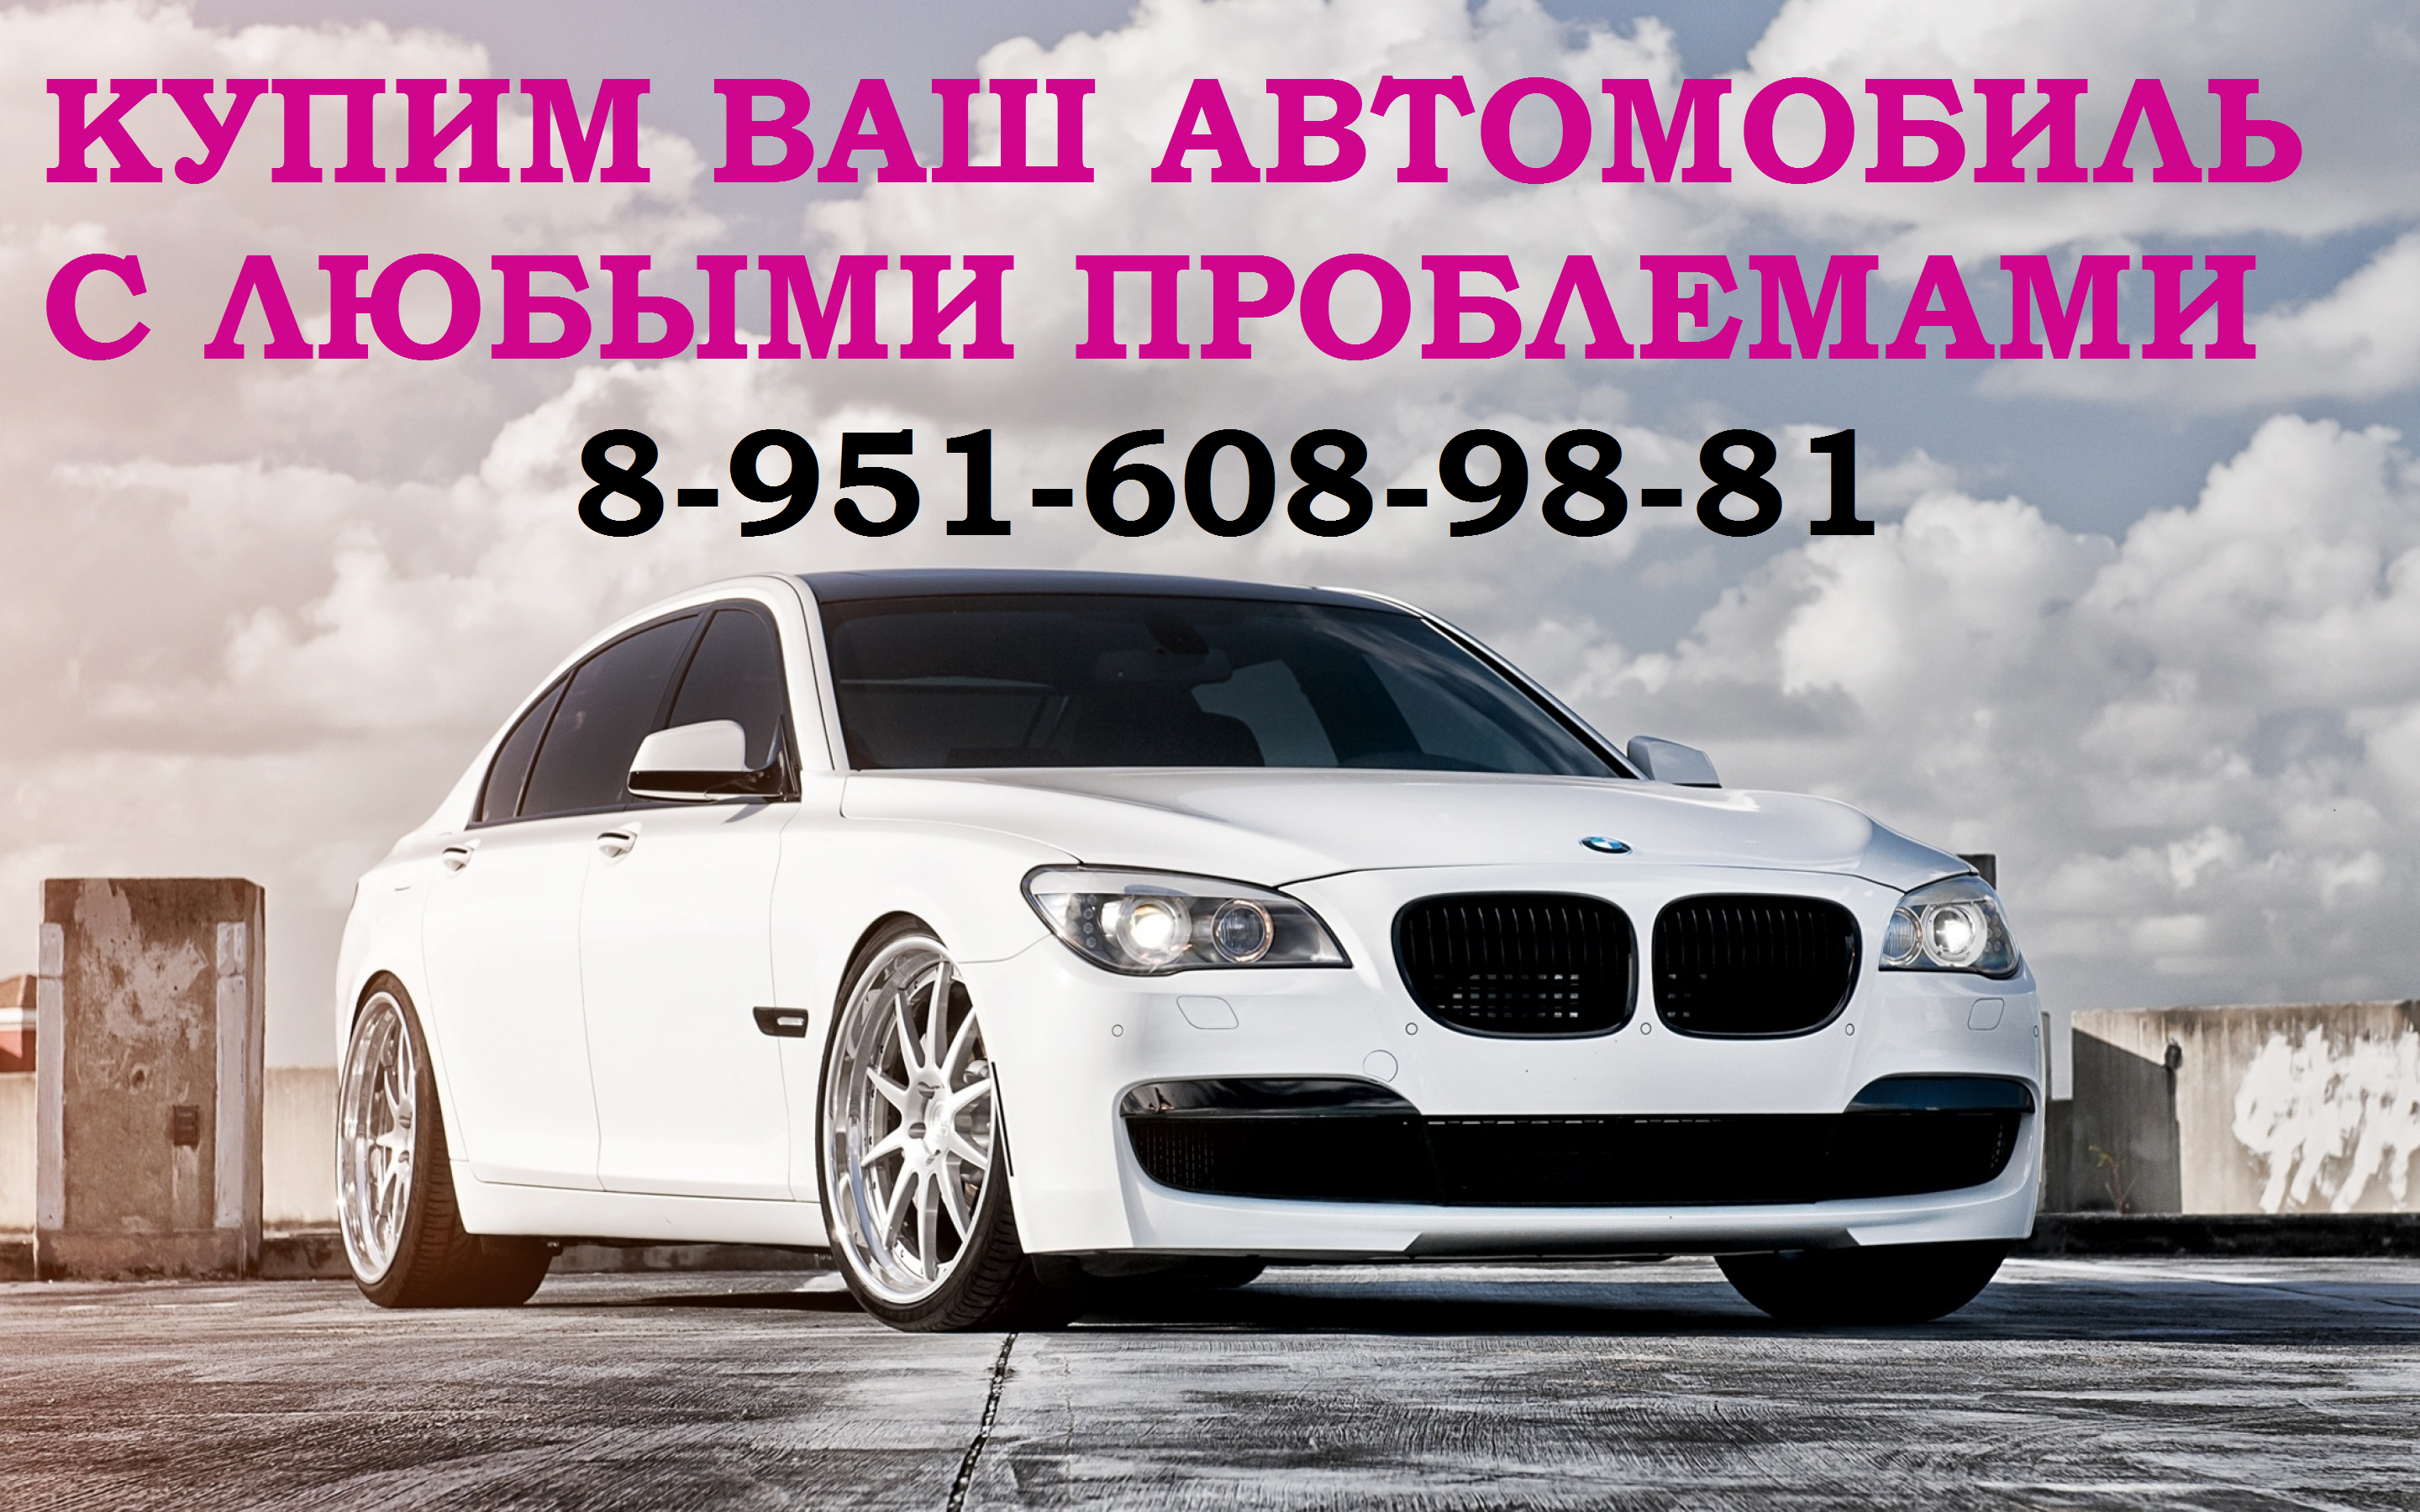 Купим любой автомобиль, с любыми проблемами 89516089881 Город Киселевск